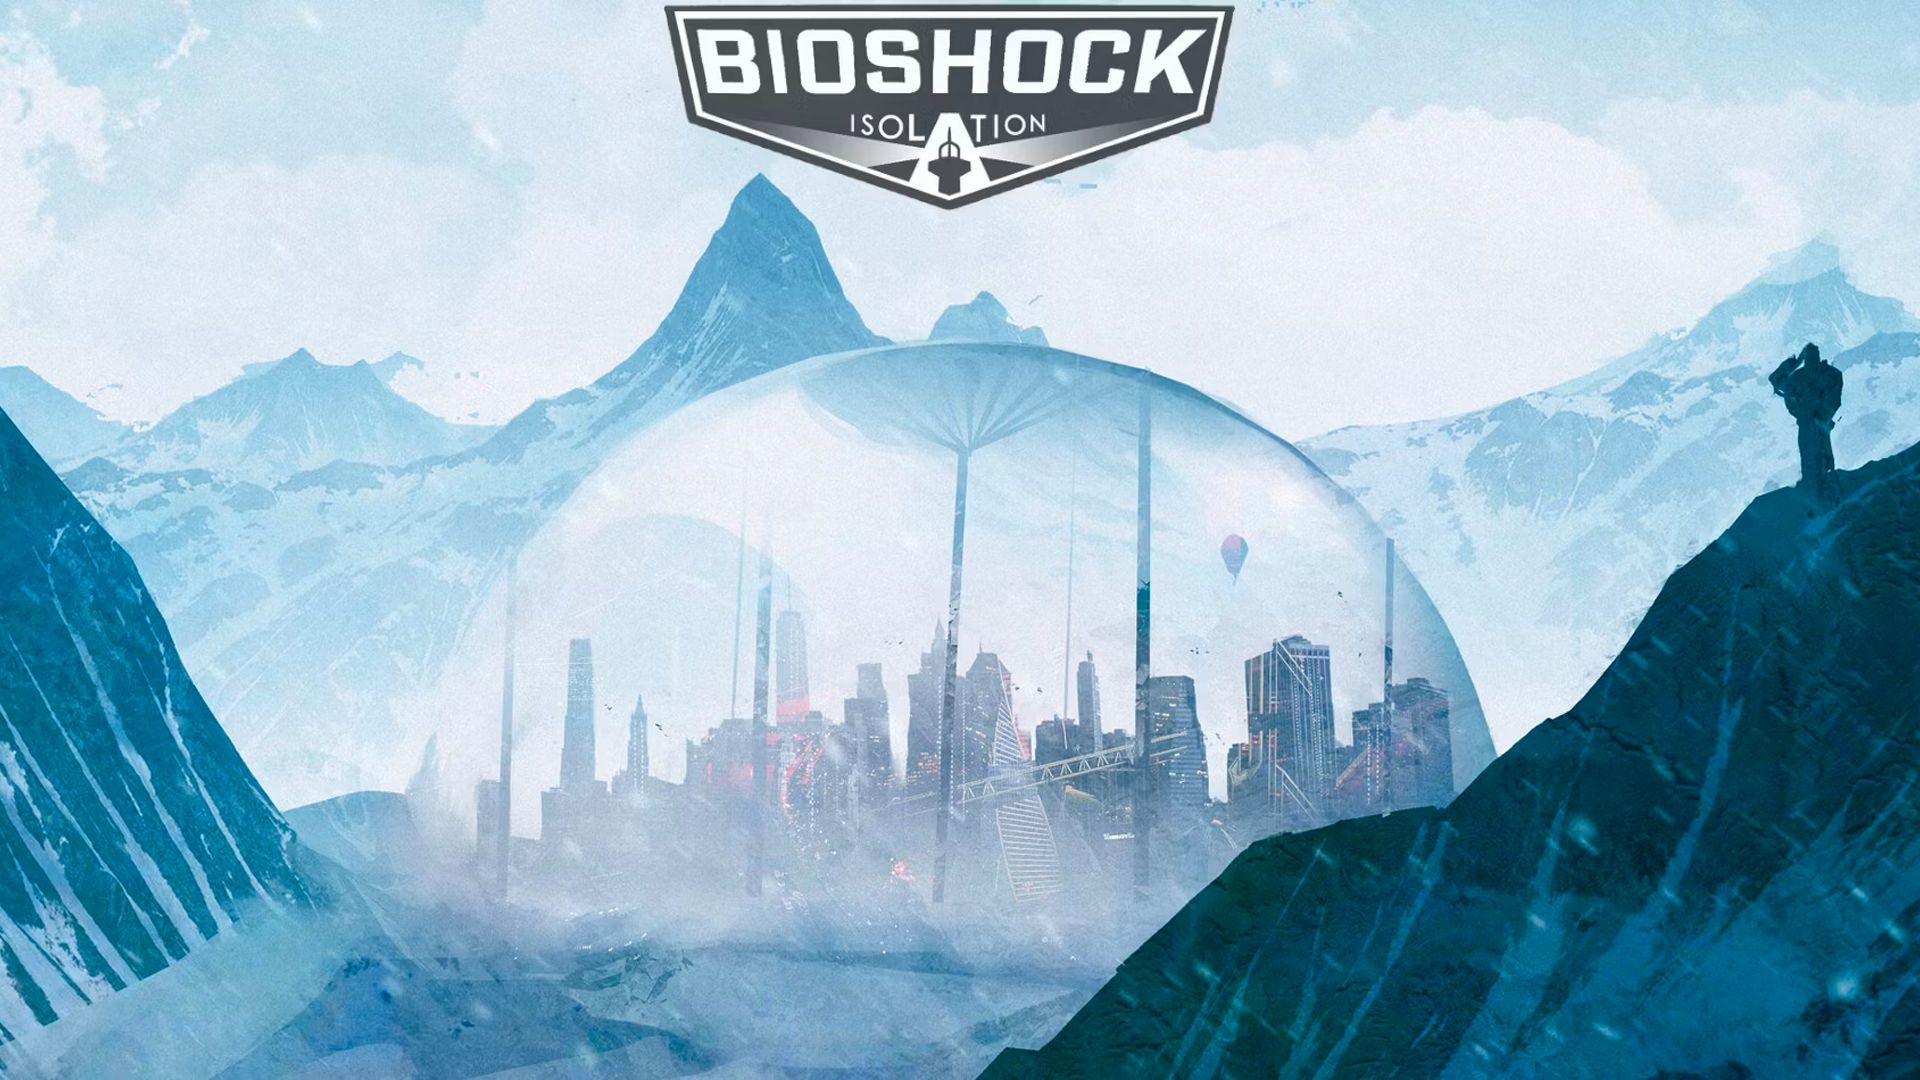 Один из разработчиков Bioshock 4, вероятно, выказал год выхода игры